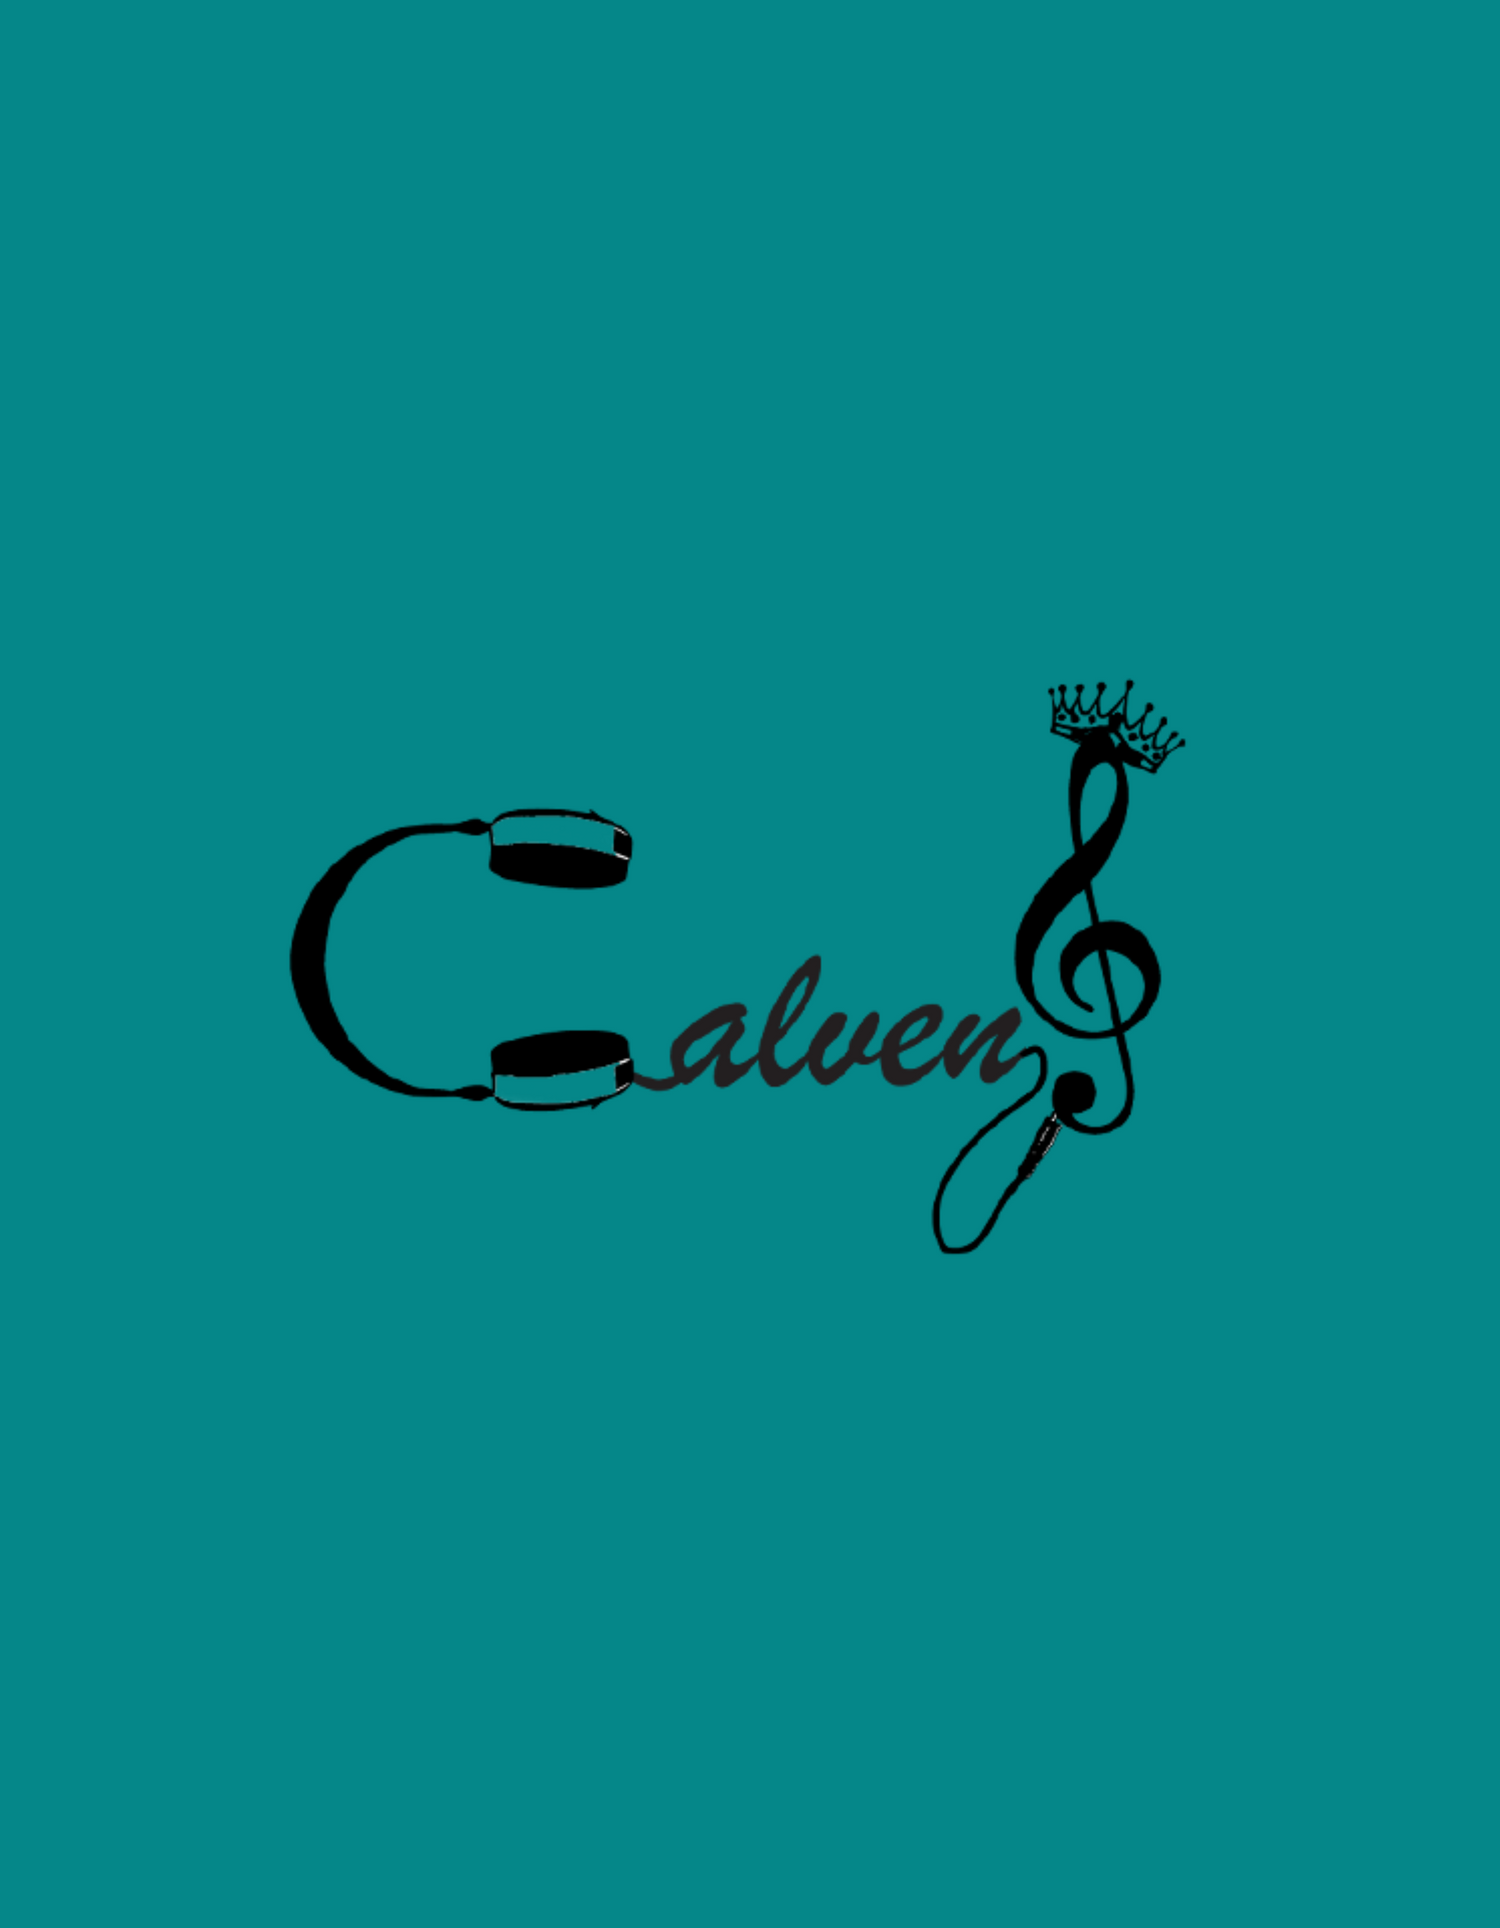 Calven J